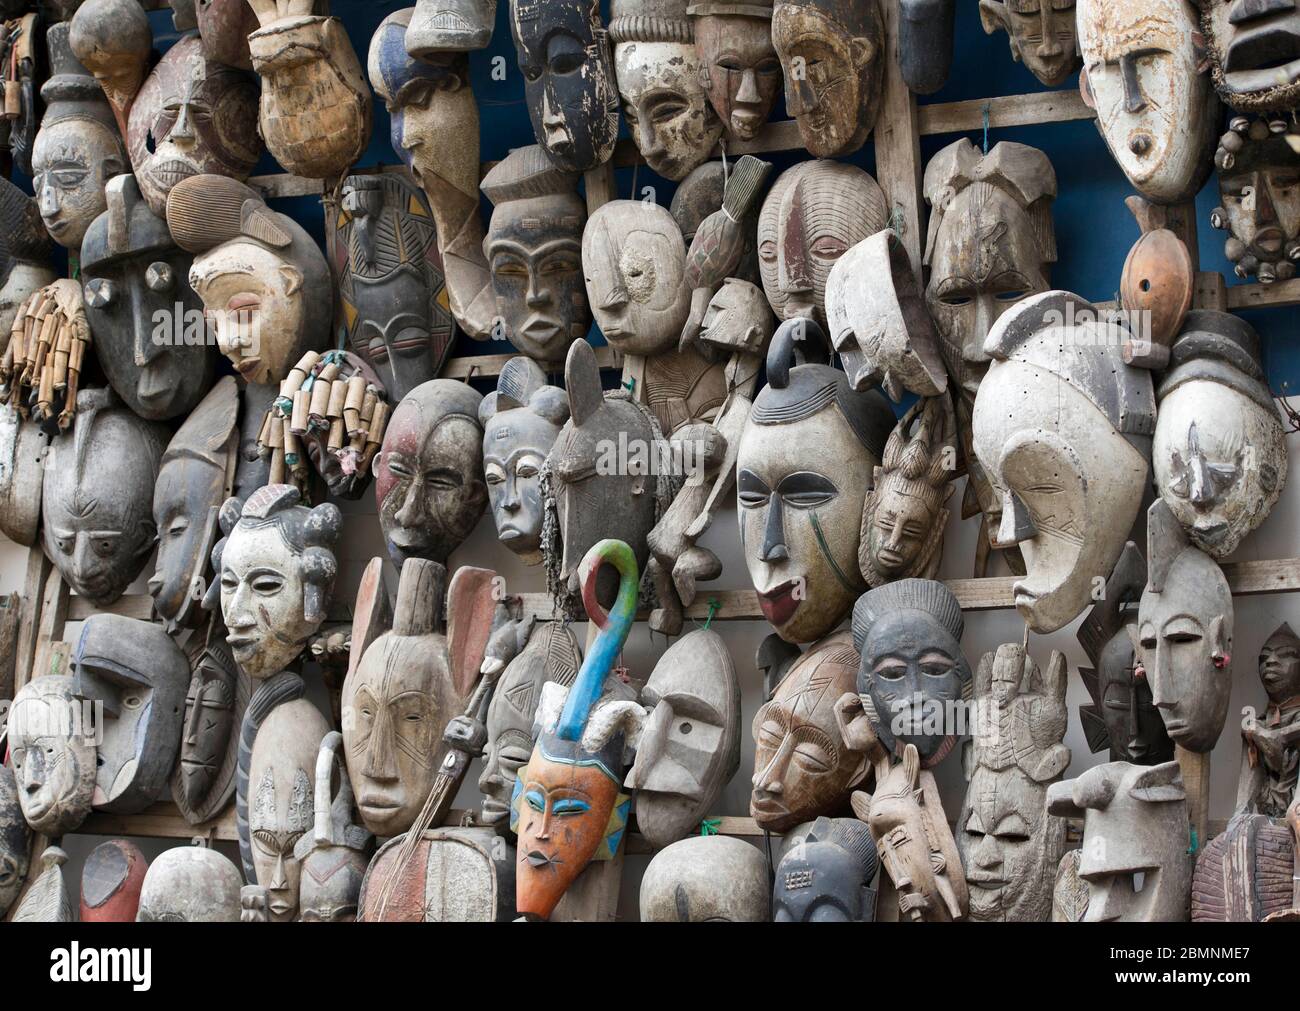 Masques africains sculptés à la main sur une cabine souvenir à Dakar, Sénégal. Banque D'Images